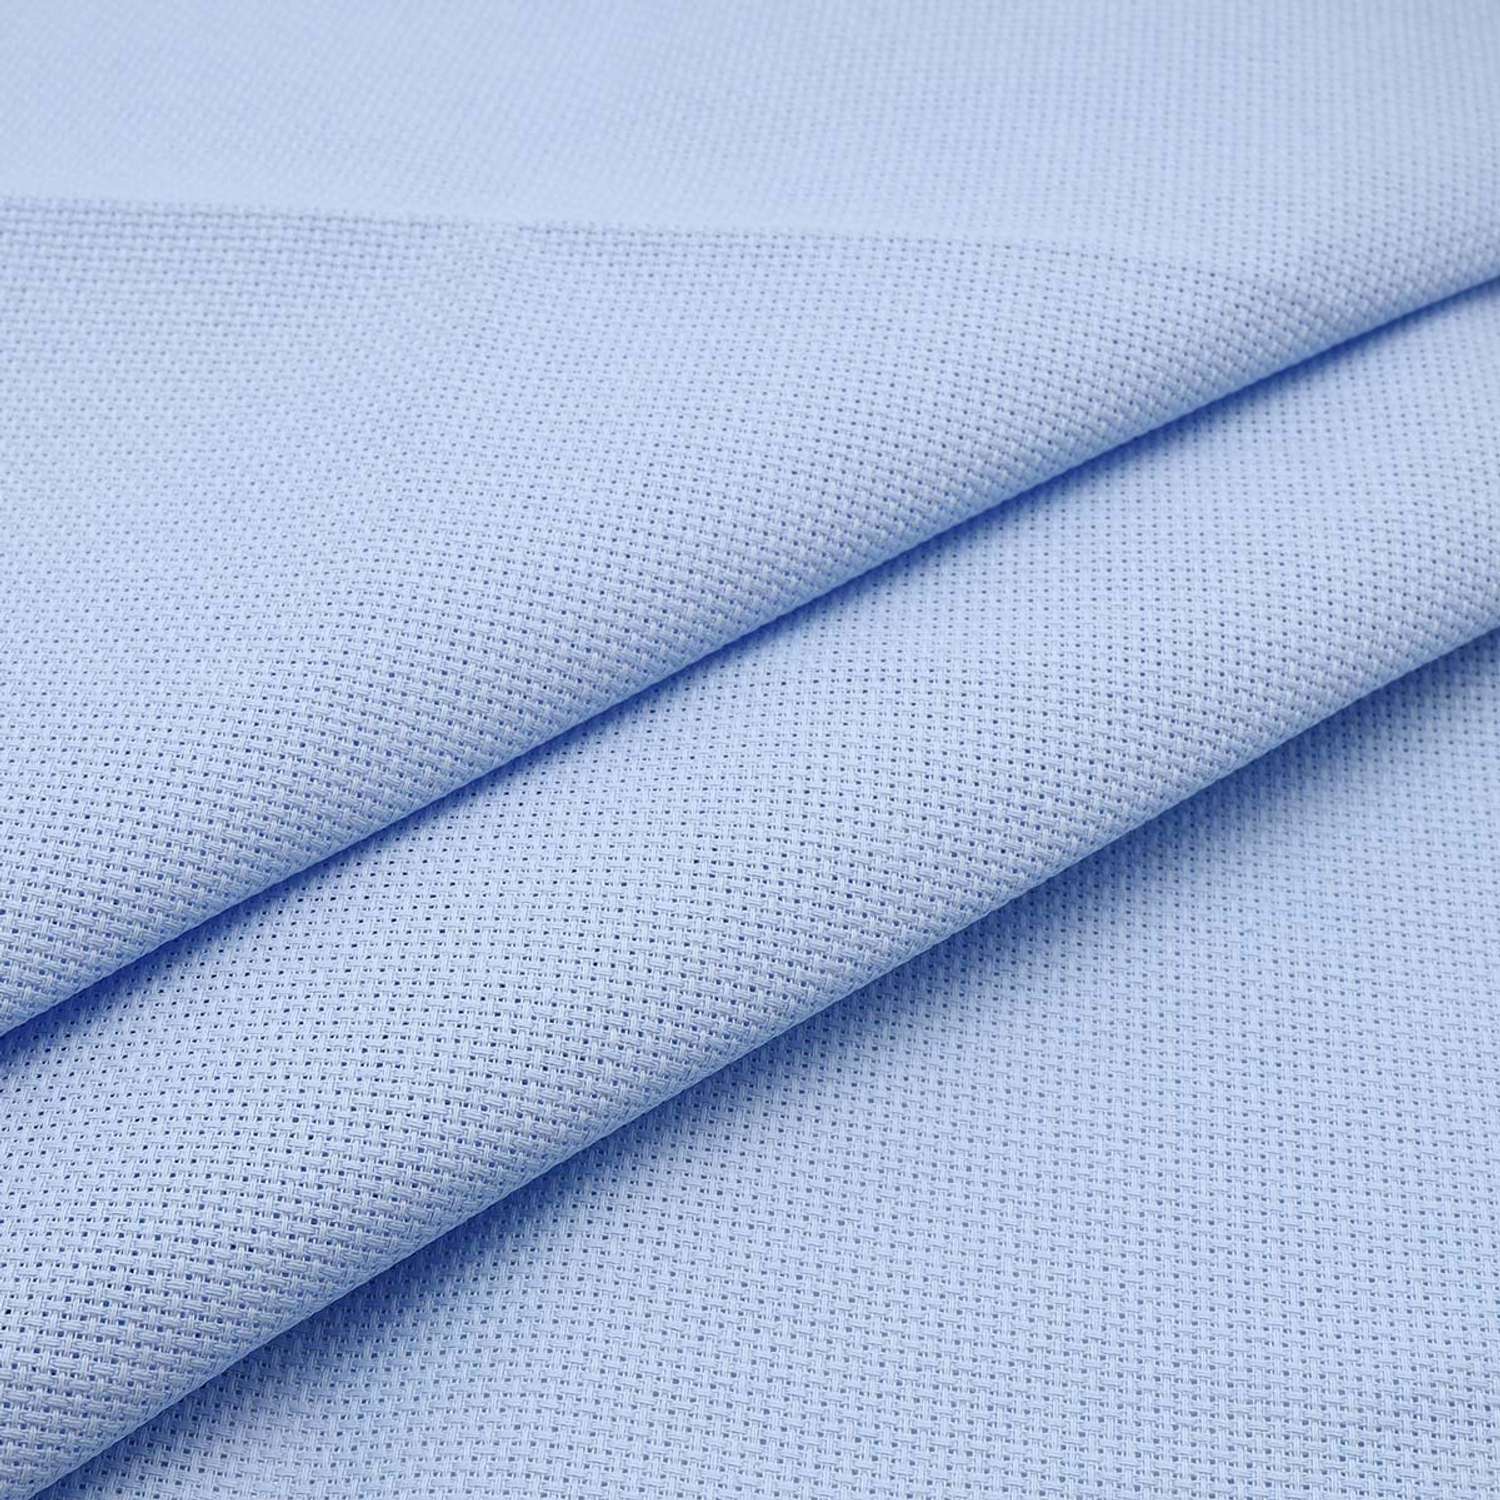 Канва Zweigart для вышивания шитья и рукоделия 16ct 50х55 см голубая - фото 2